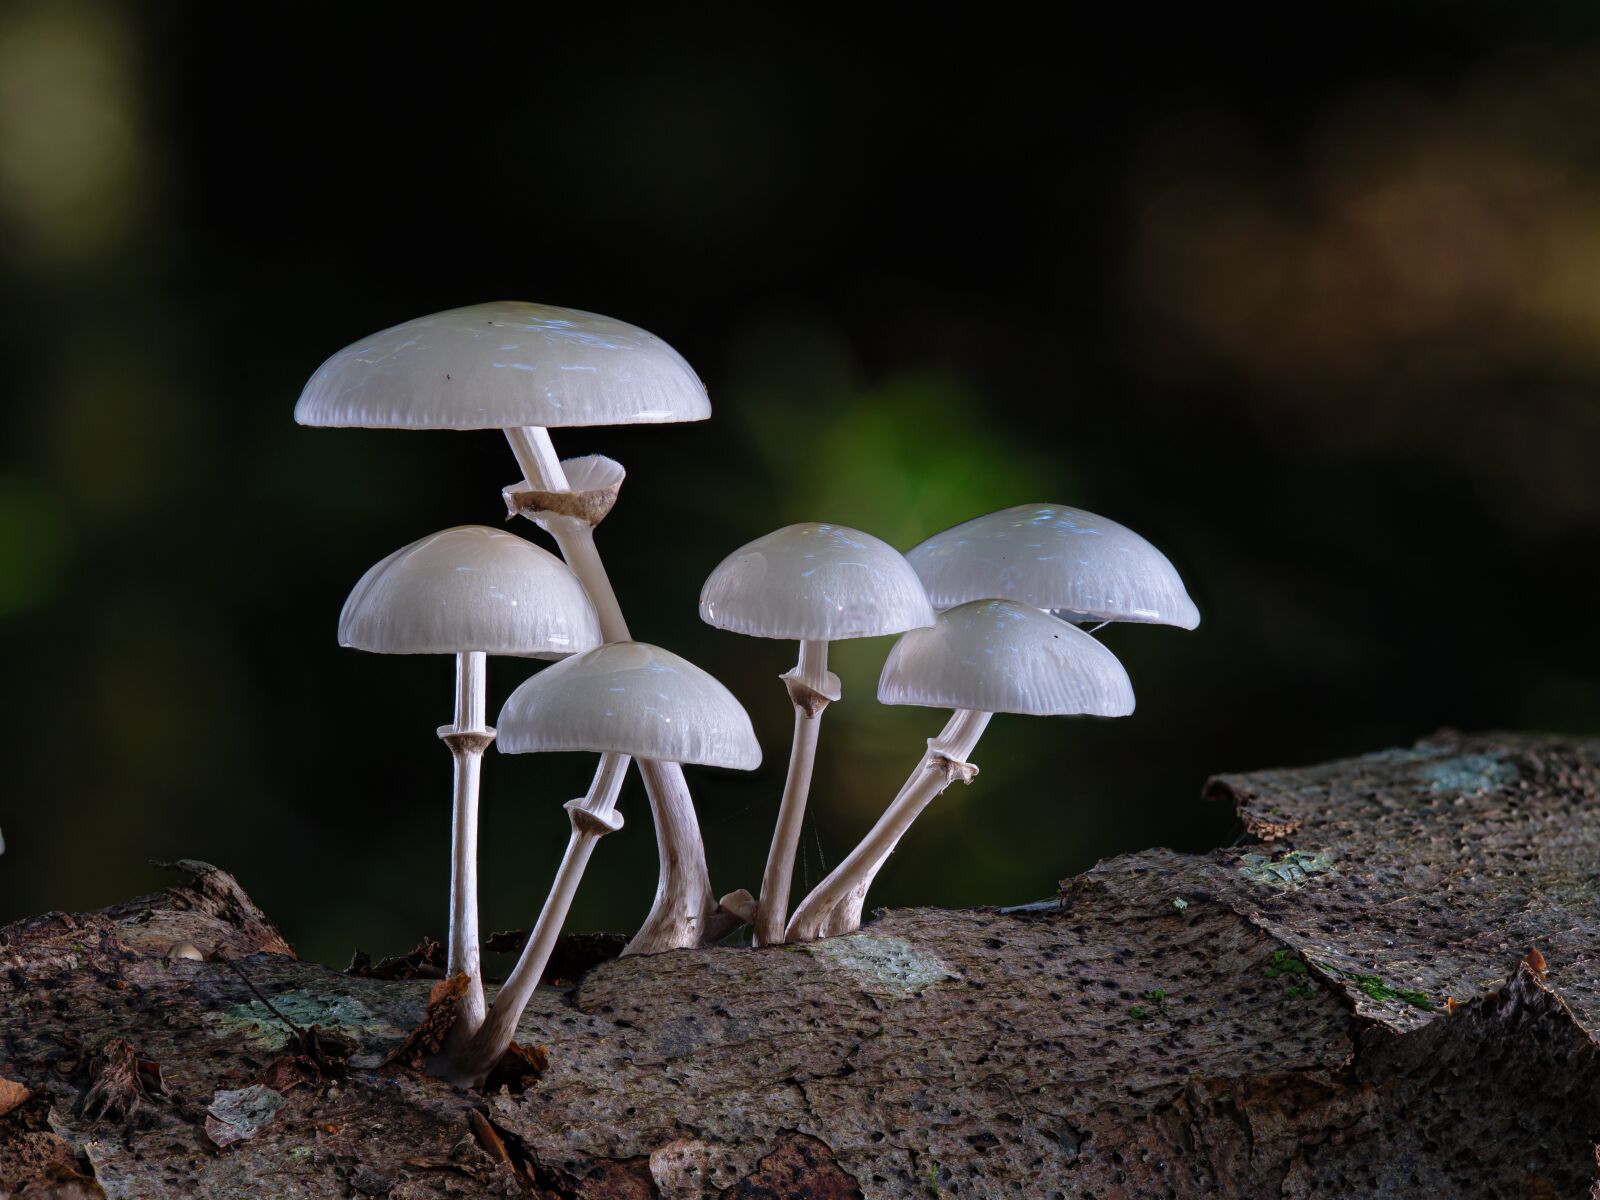 Olympus M.Zuiko Digital ED 60mm F2.8 Macro sample photo. Mushrooms, mushroom, edible photography